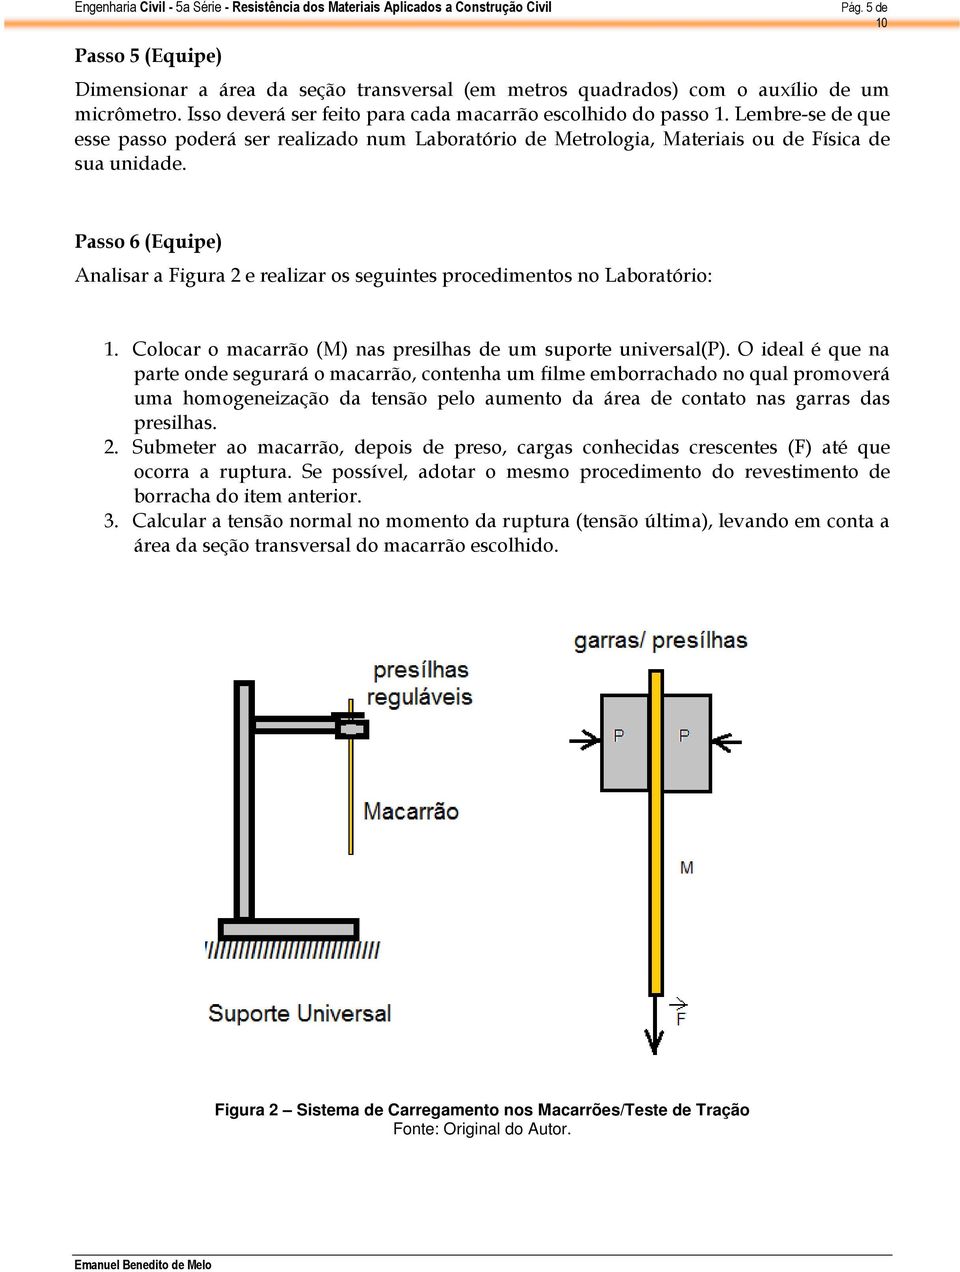 Passo 6 (Equipe) Analisar a Figura 2 e realizar os seguintes procedimentos no Laboratório: 1. Colocar o macarrão (M) nas presilhas de um suporte universal(p).